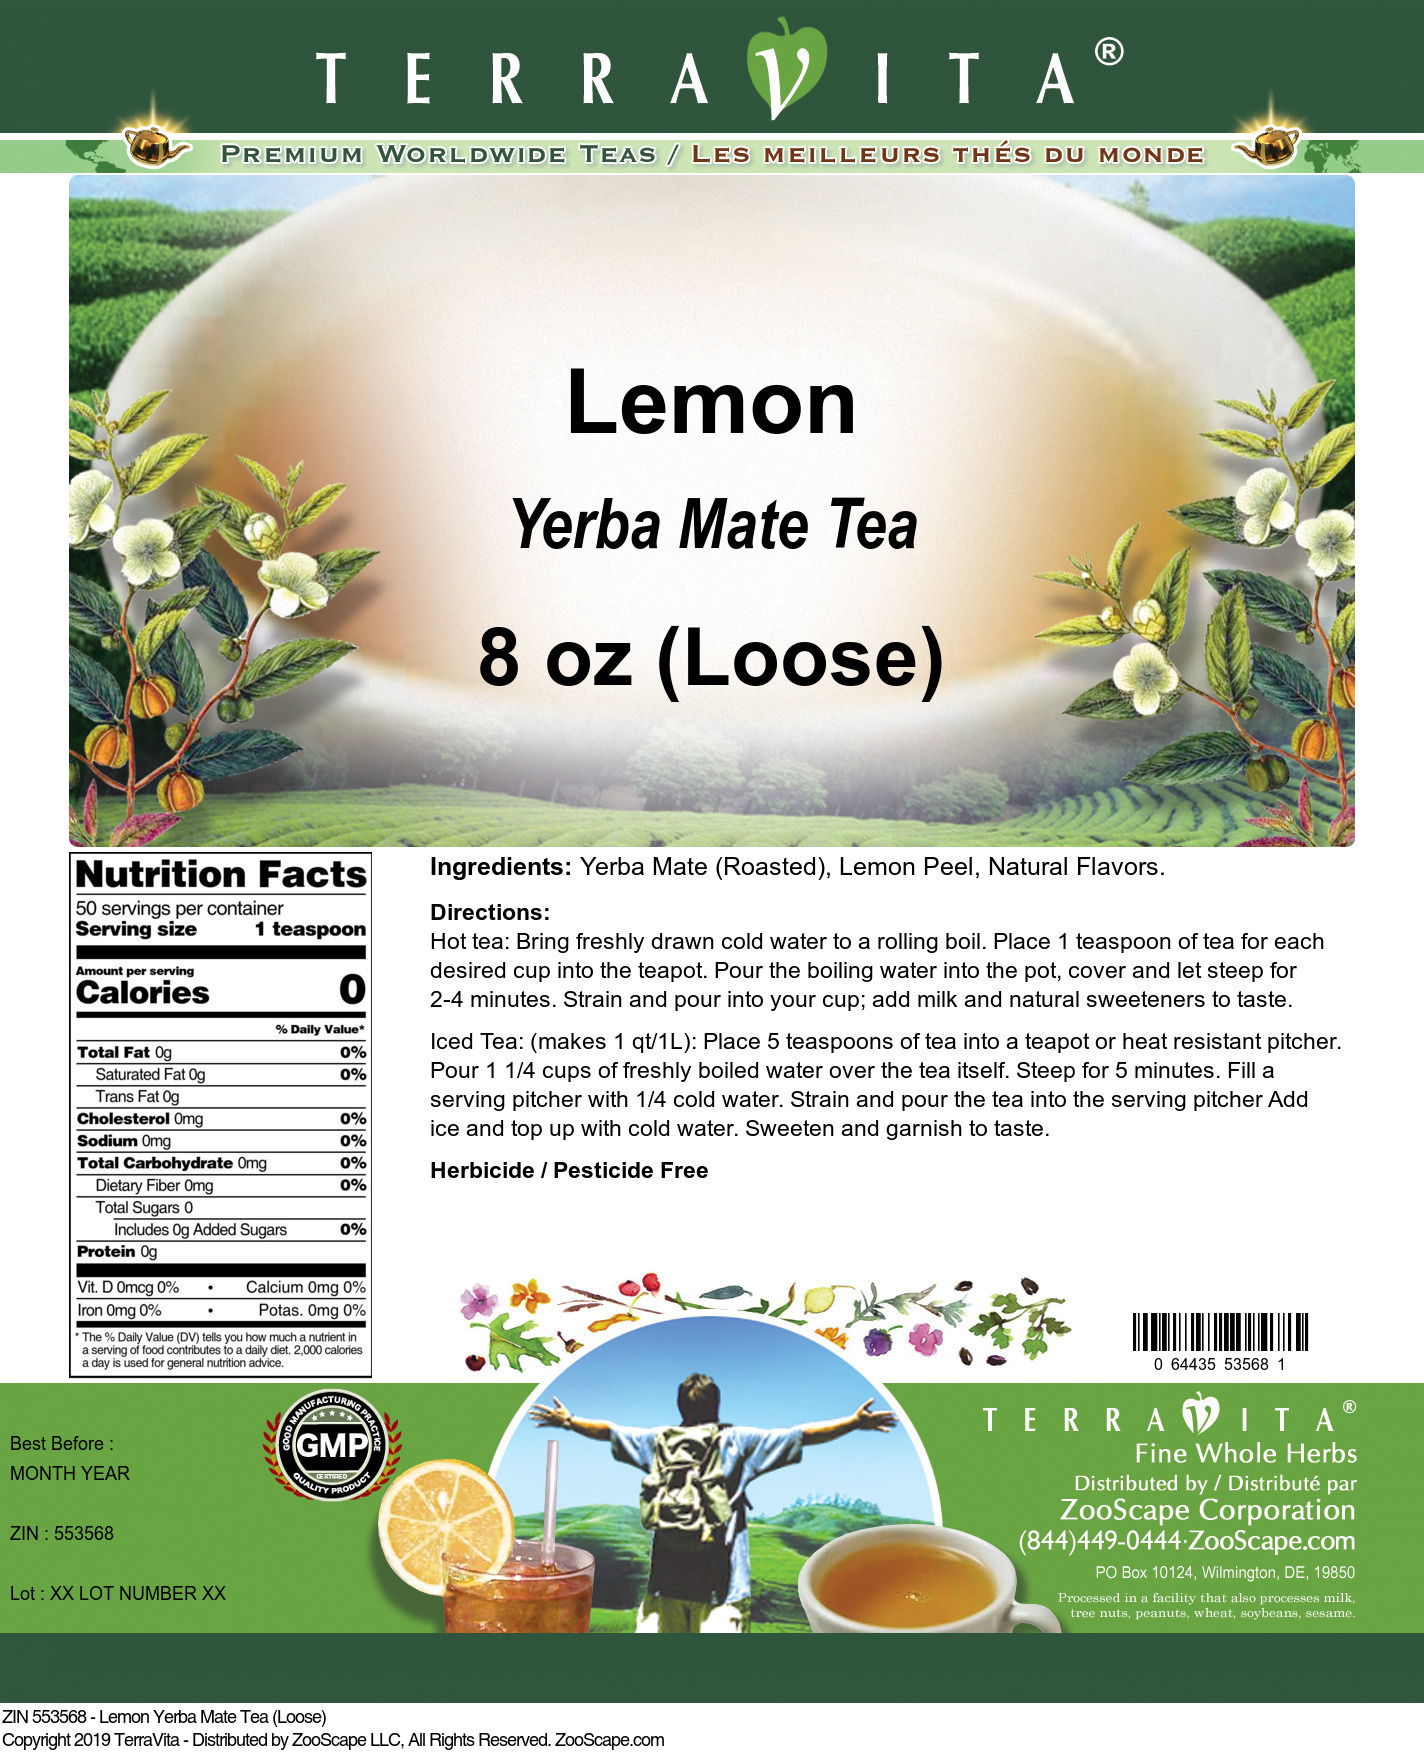 Lemon Yerba Mate Tea (Loose) - Label